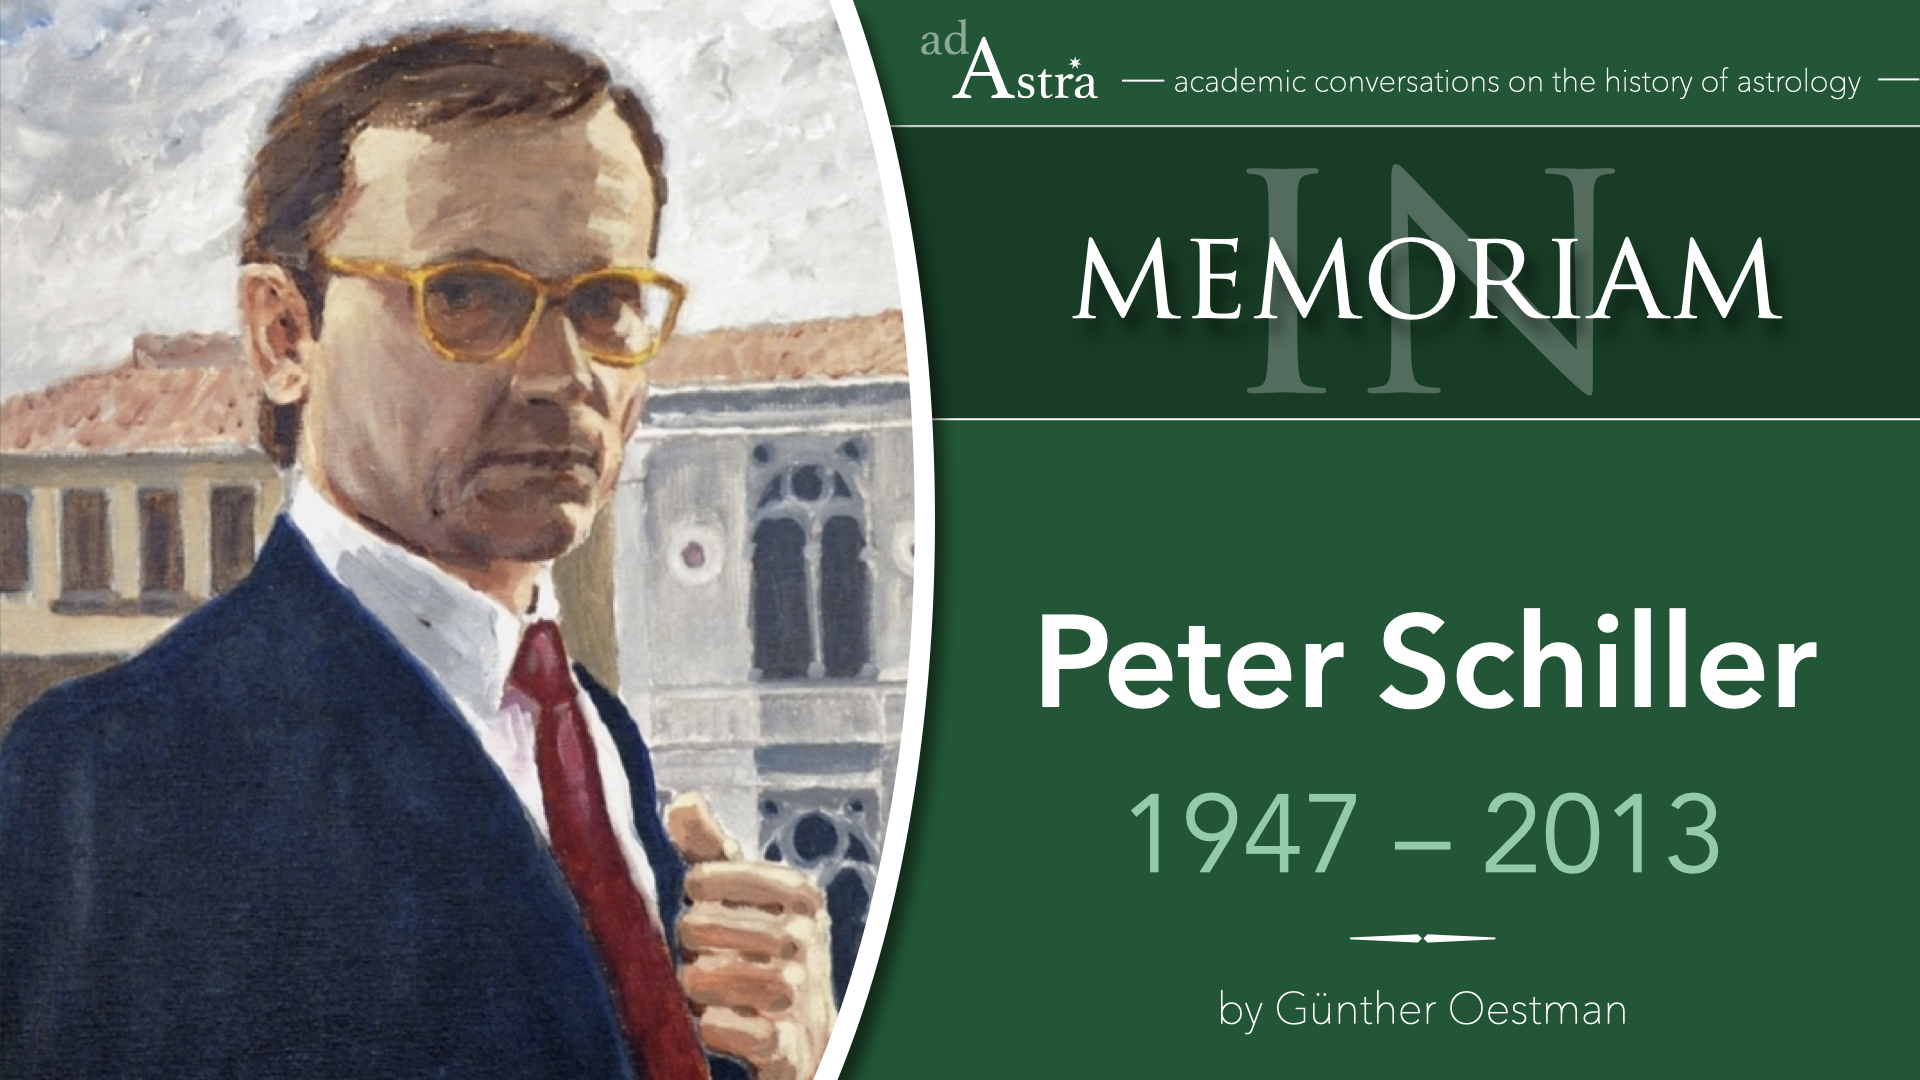 Peter Schiller (1947-2013): Astrology and Art